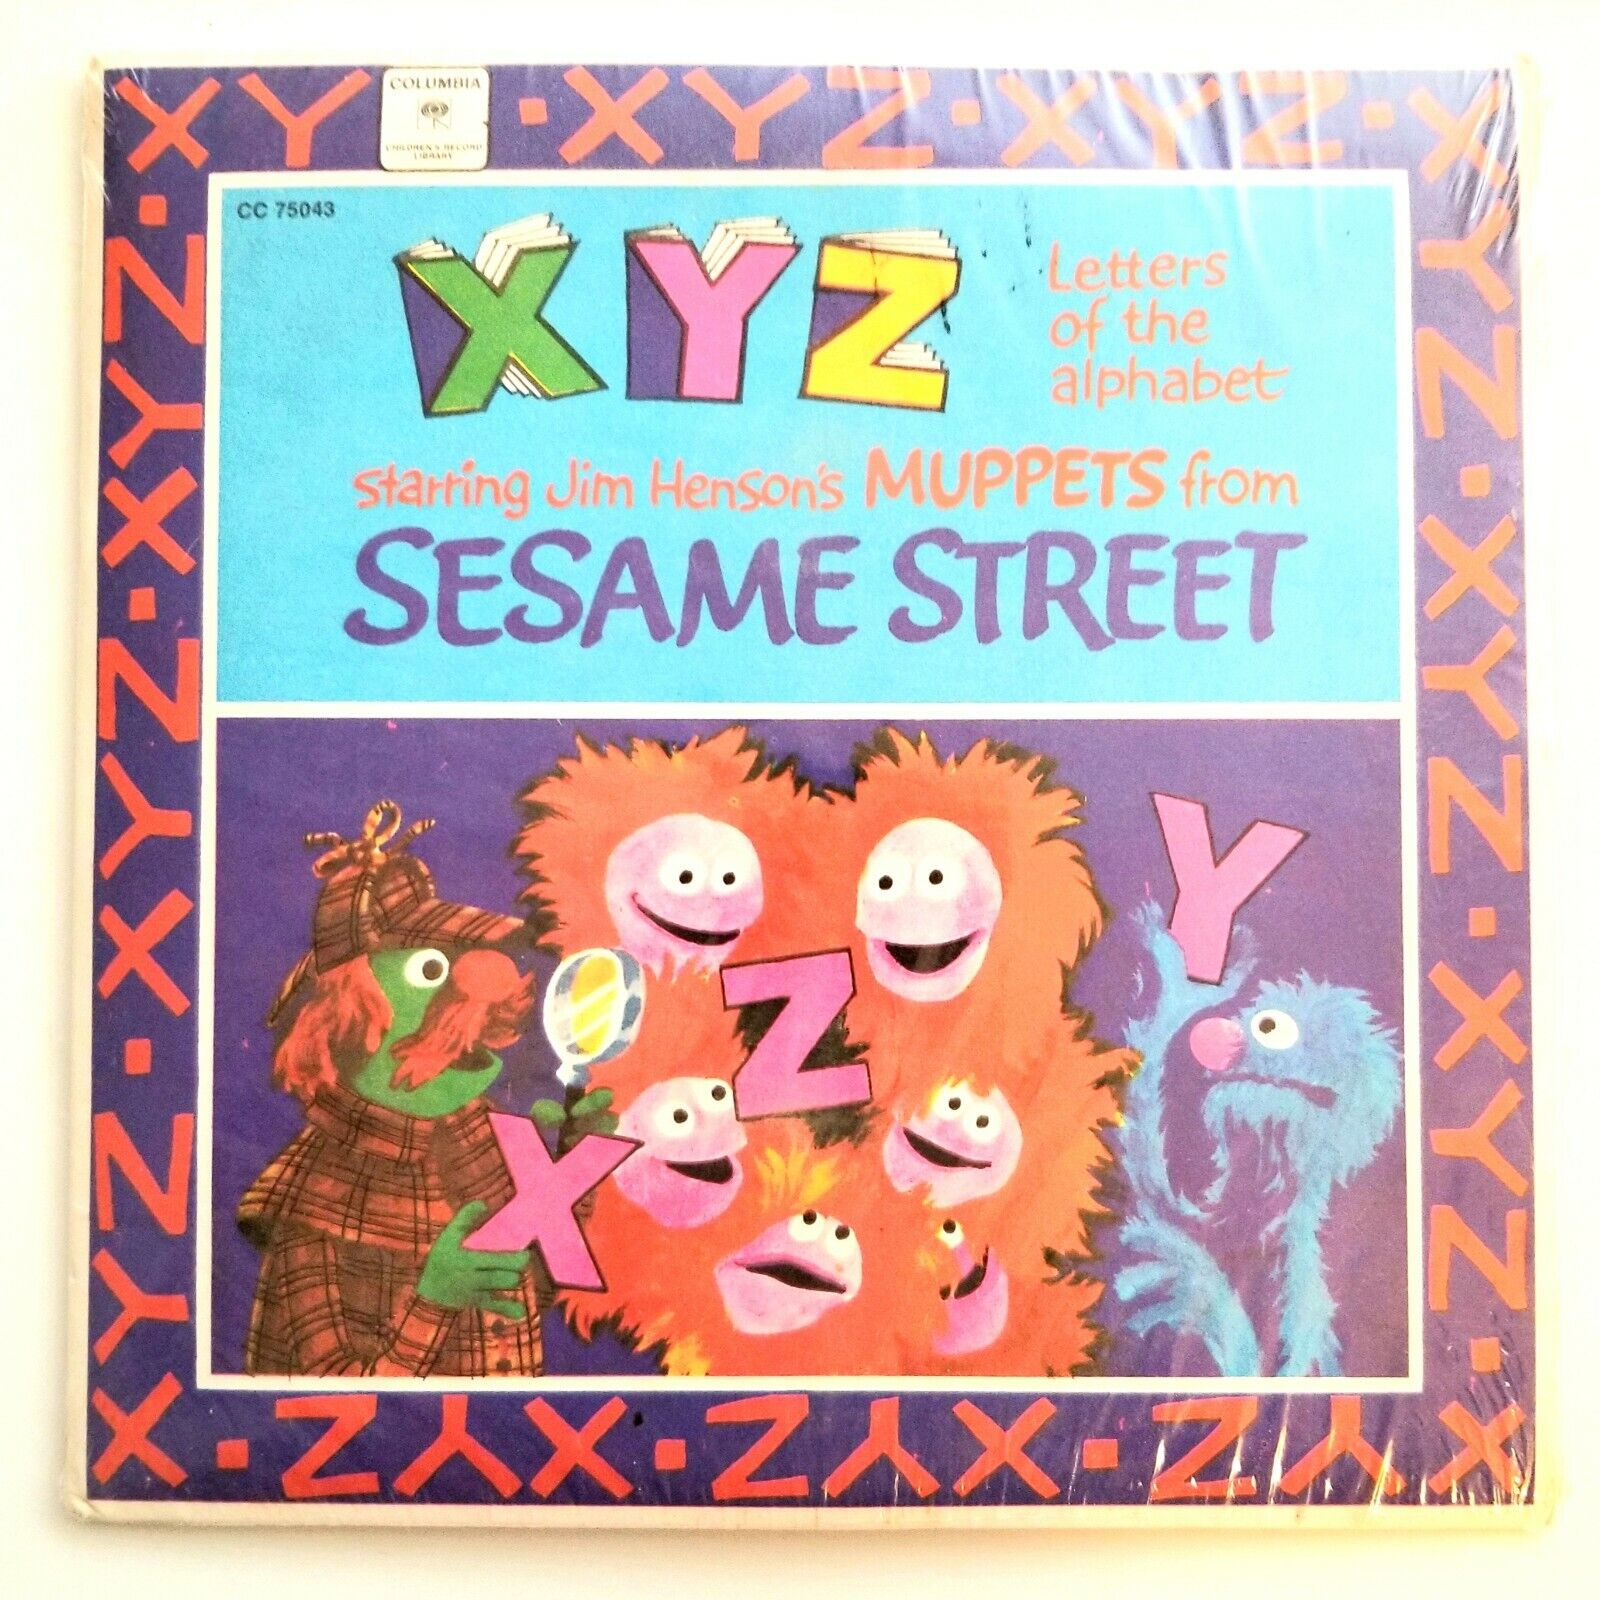 Sesame Street "X Y Z" 45 RPM Record.  Original Seal 1971. Original Cast.  New.